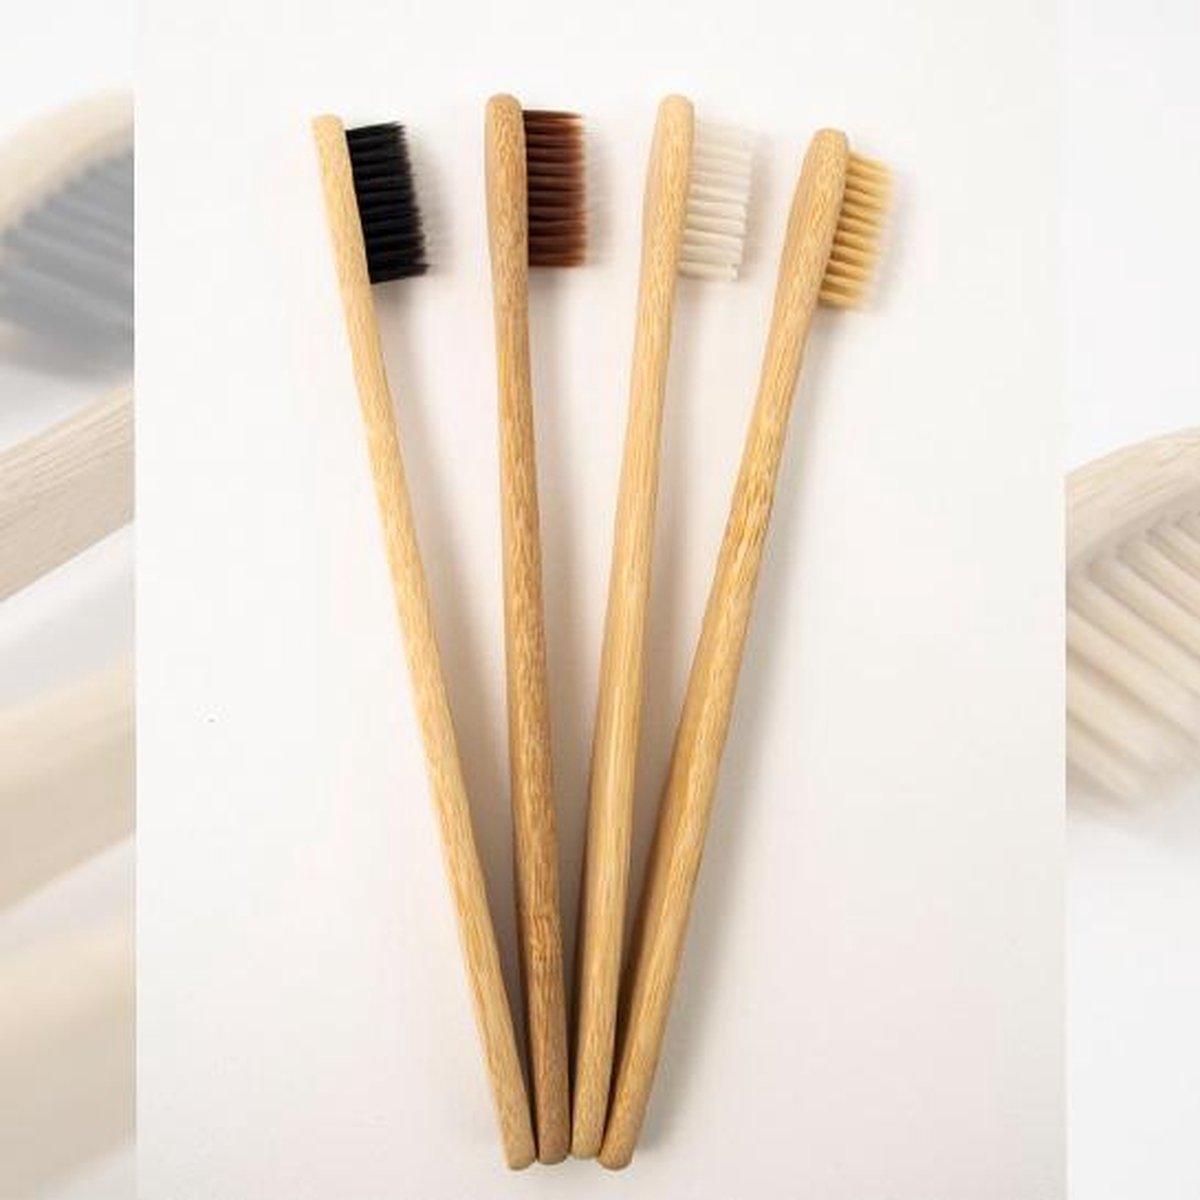 Bamboo - Bamboe Ecologische Tandenborstel – Set van 4 stuks - Volwassen – Recyclebaar en Biologisch afbreekbaar – Toothbrushes